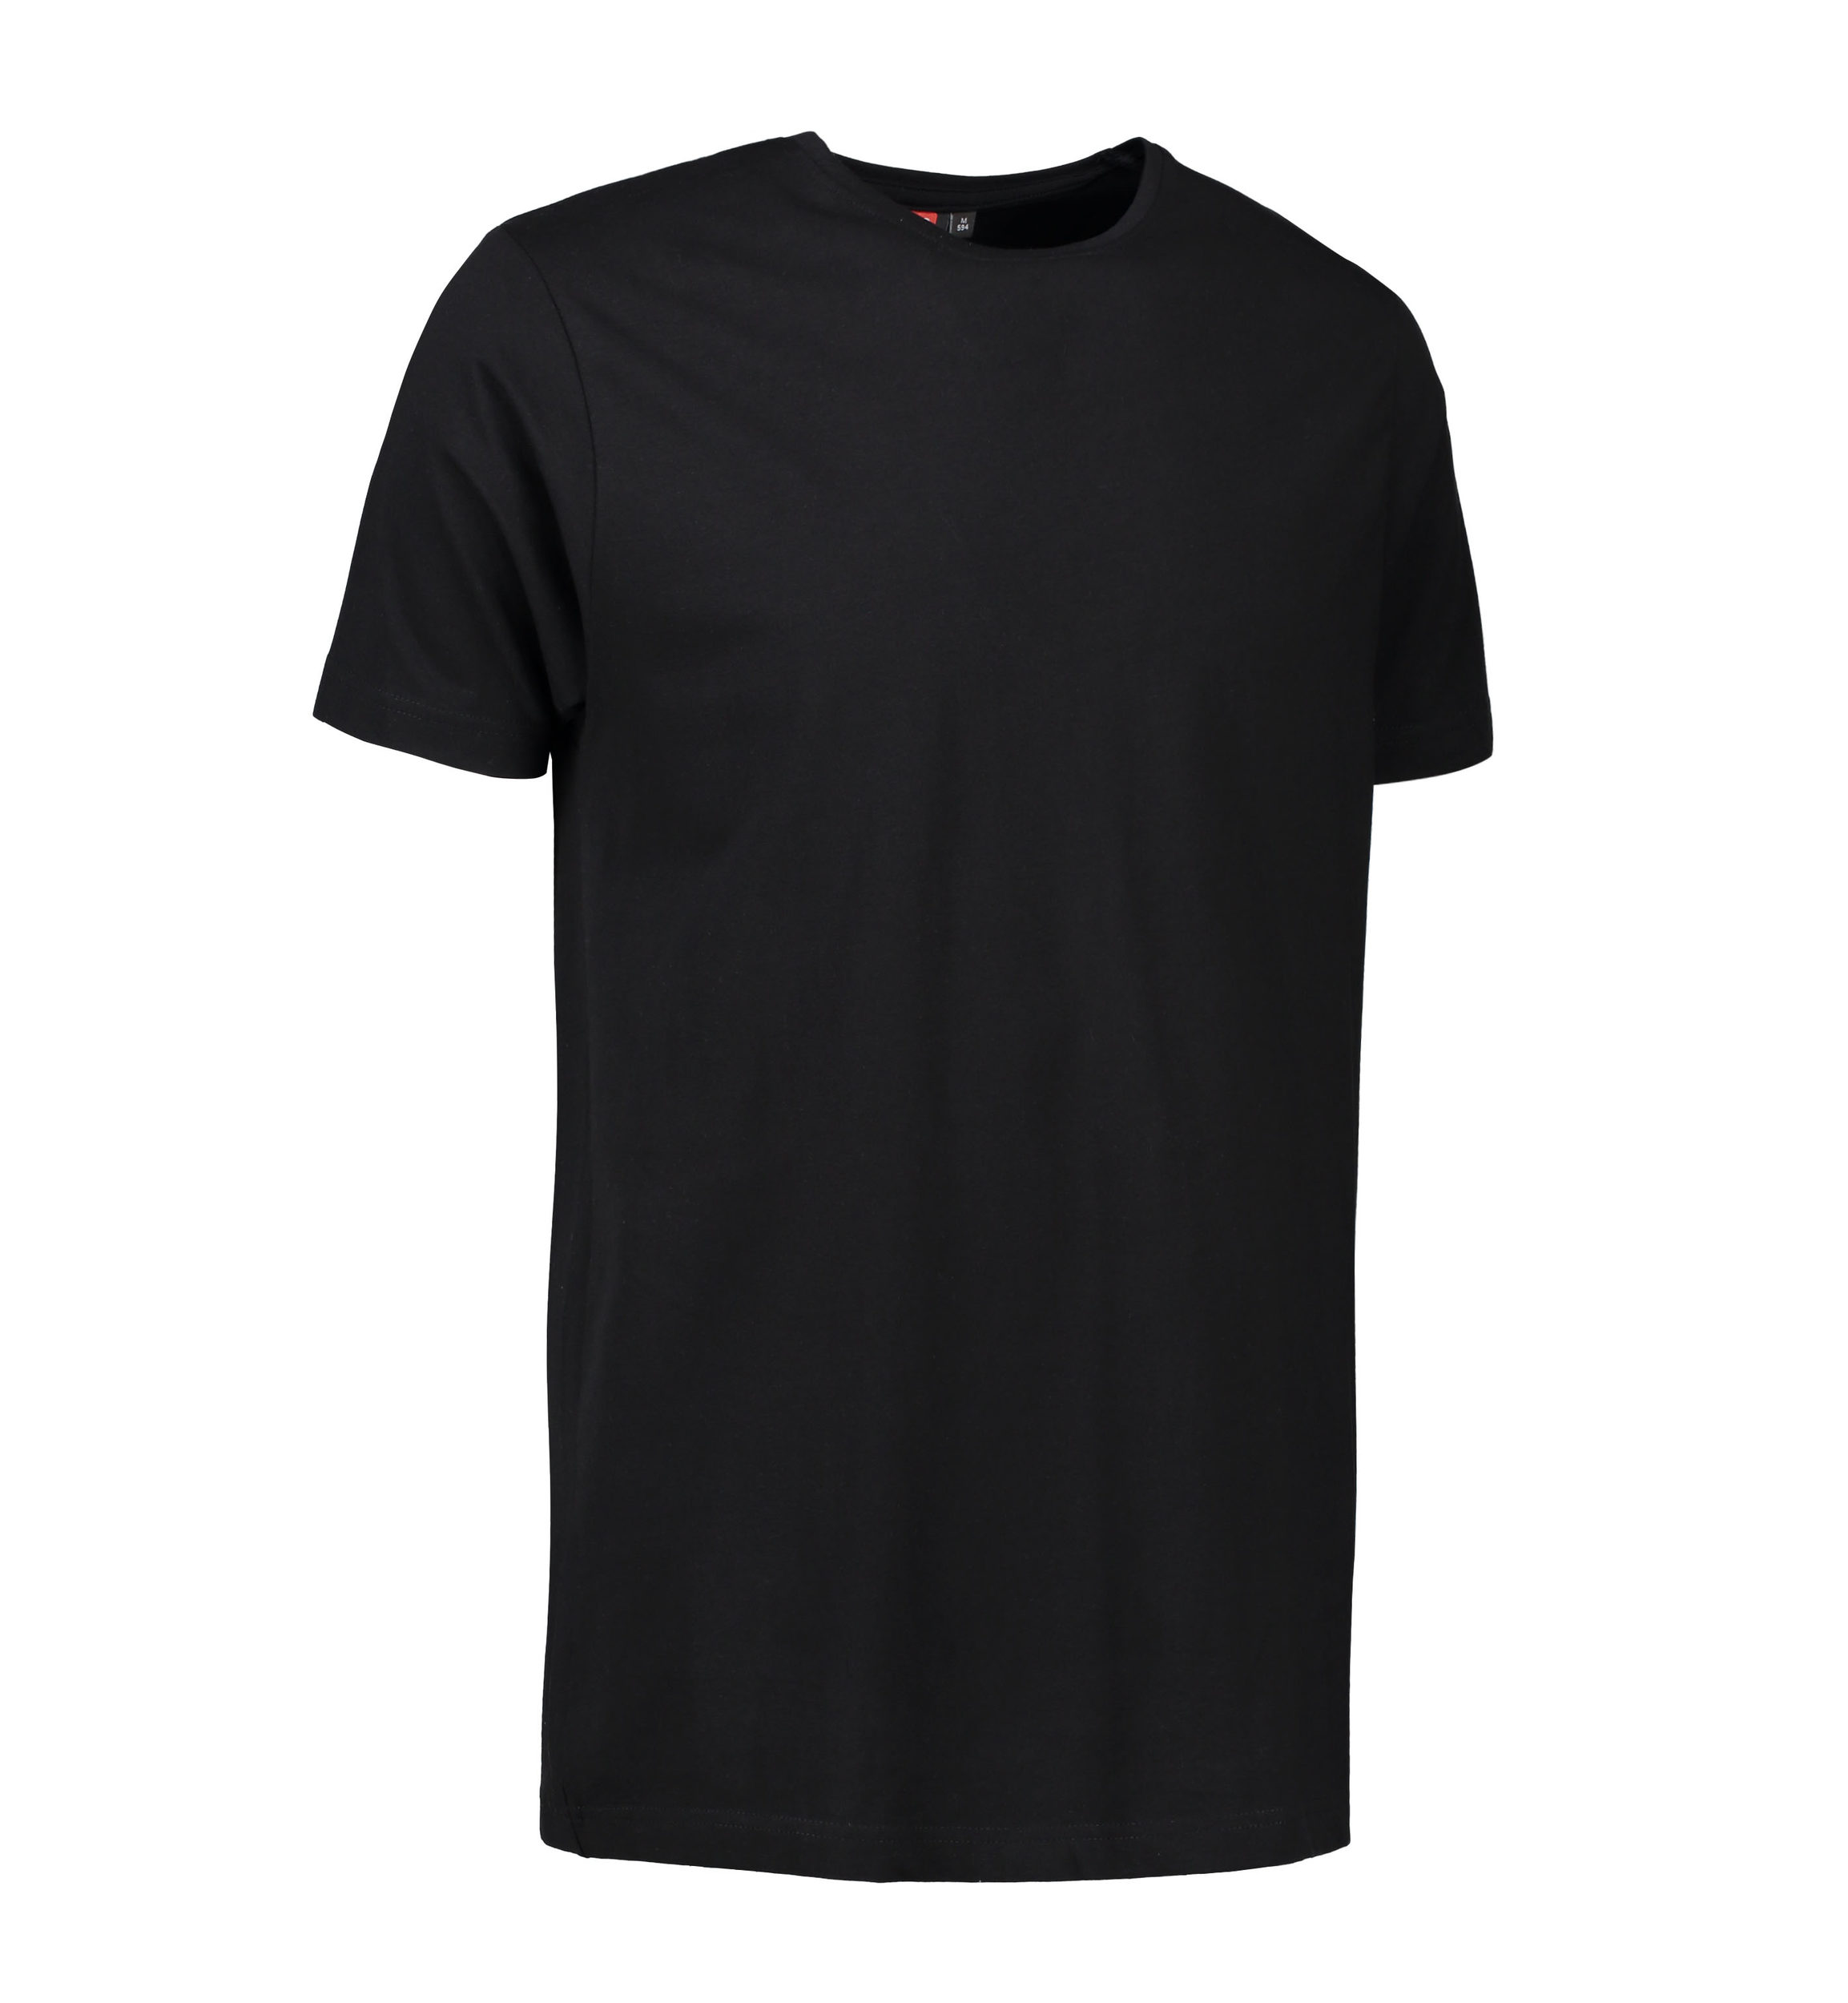 Billede af Stretch t-shirt til mænd i sort - 2XL hos Sygeplejebutikken.dk